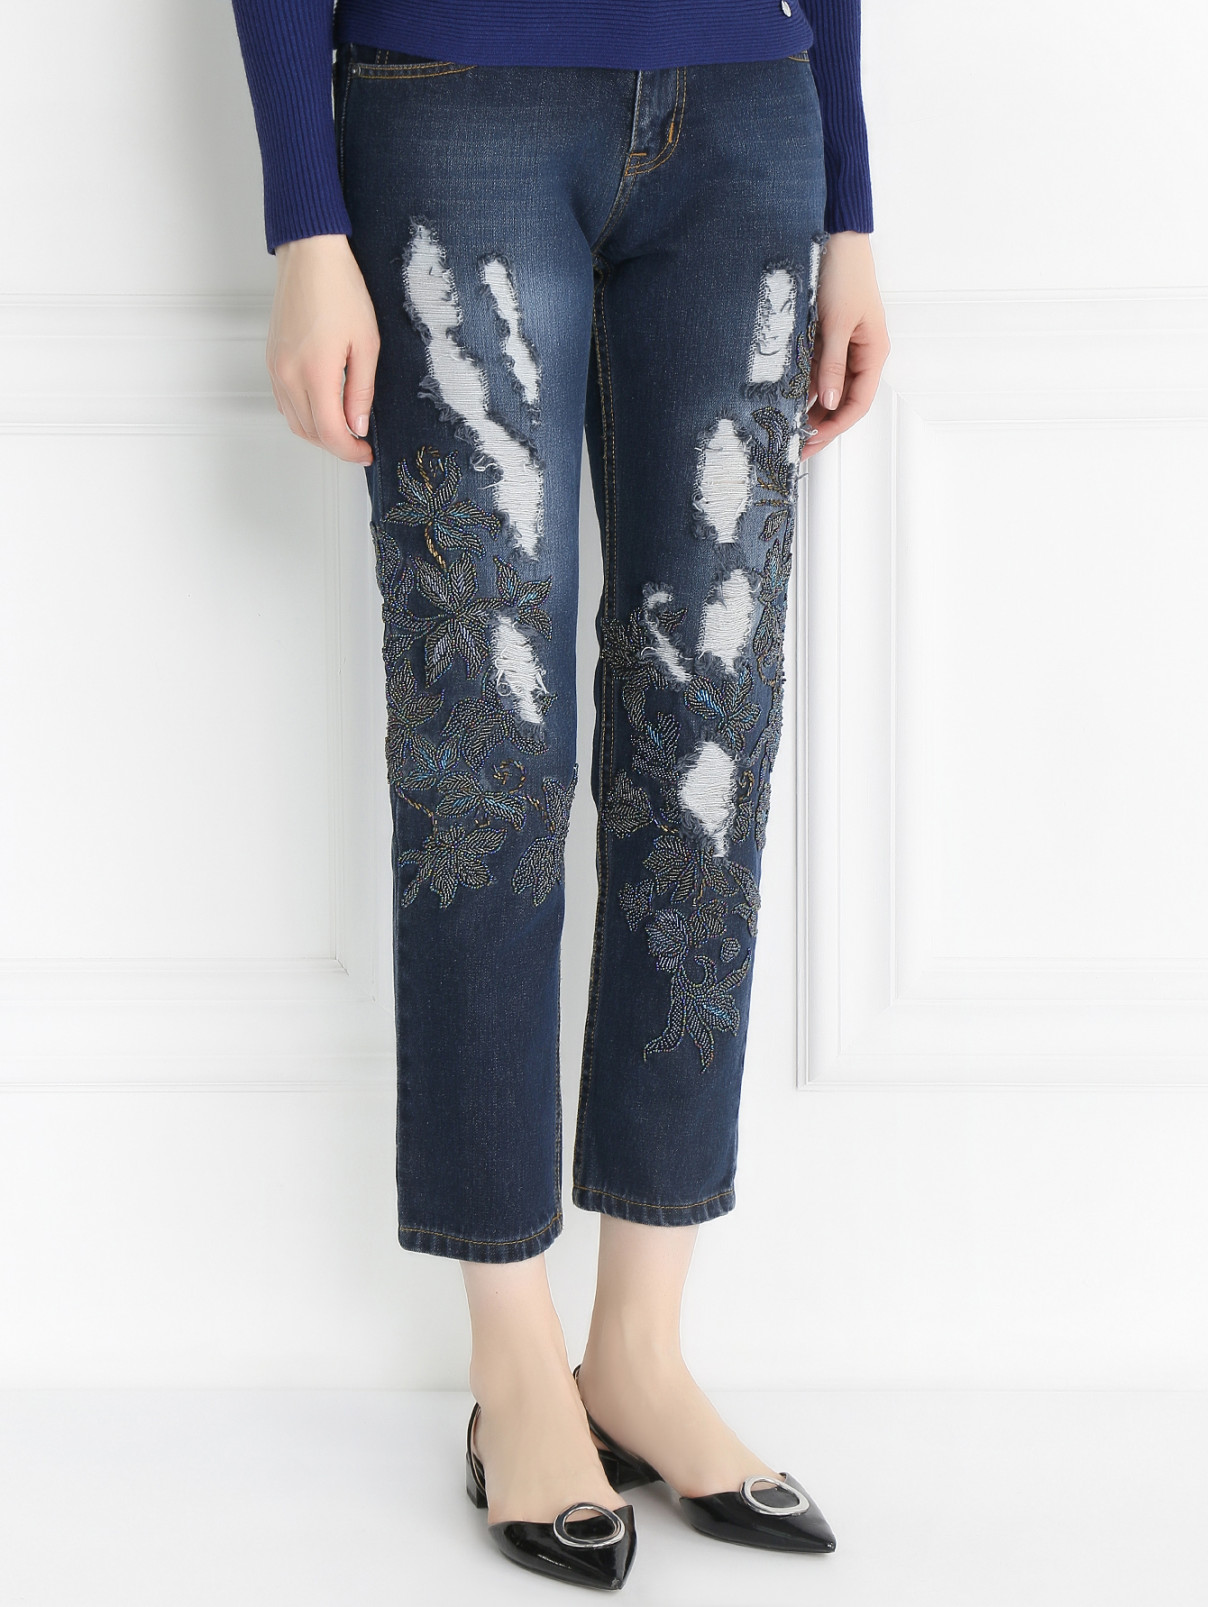 Укороченные джинсы с потертостями и вышивкой из бисера MAD Almadal  –  Модель Верх-Низ  – Цвет:  Синий